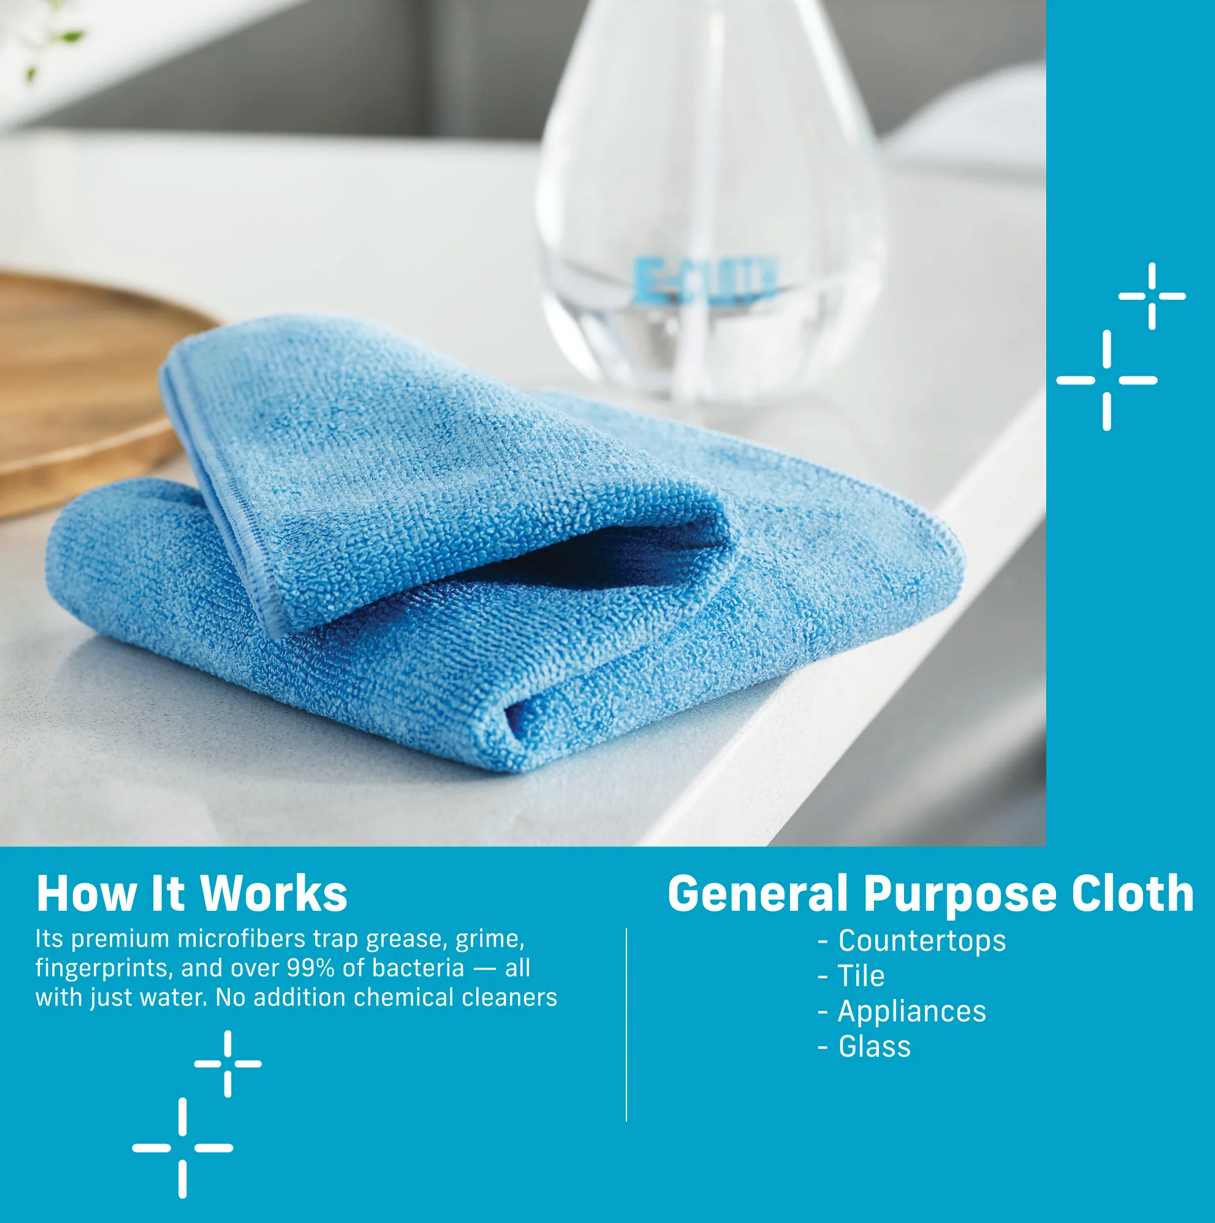 *E-Cloth General Purpose Cloth